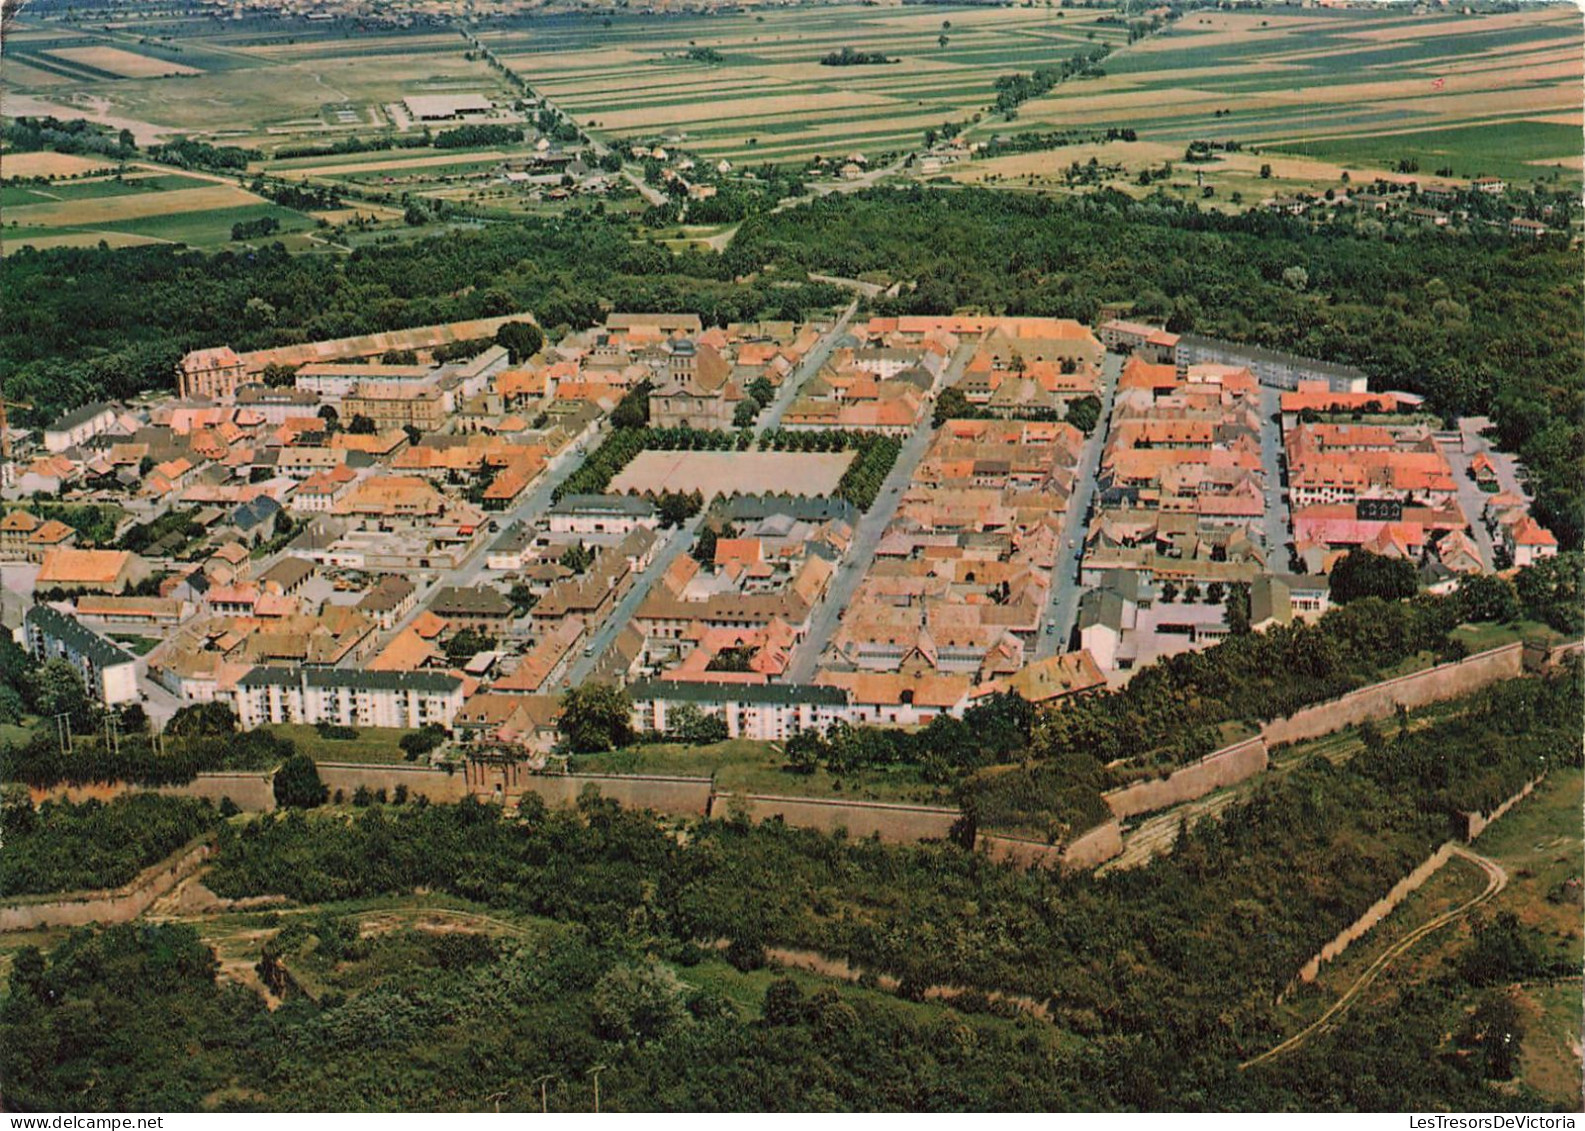 FRANCE - Neuf Brisach - Ville Fortifiée Par Vauban Au XVII ème Siècle - Colorisé - Carte Postale - Neuf Brisach